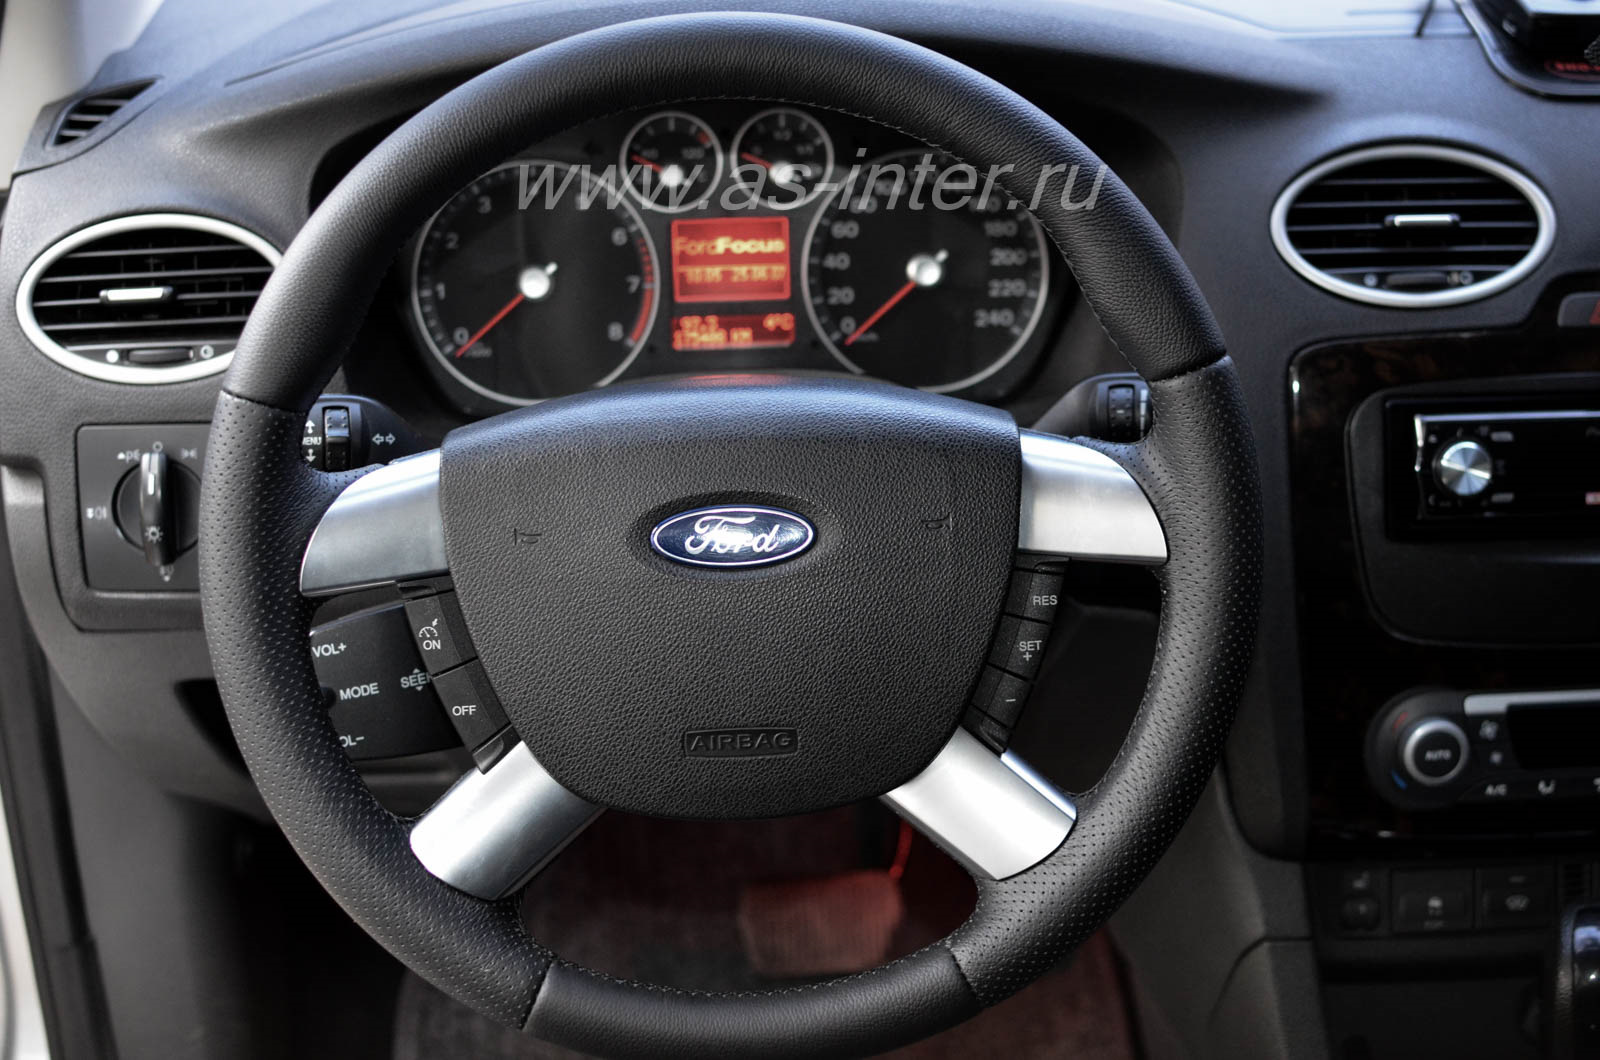 Кожаная оплётка на руль включая спицы для Ford Focus II (2005-2011).